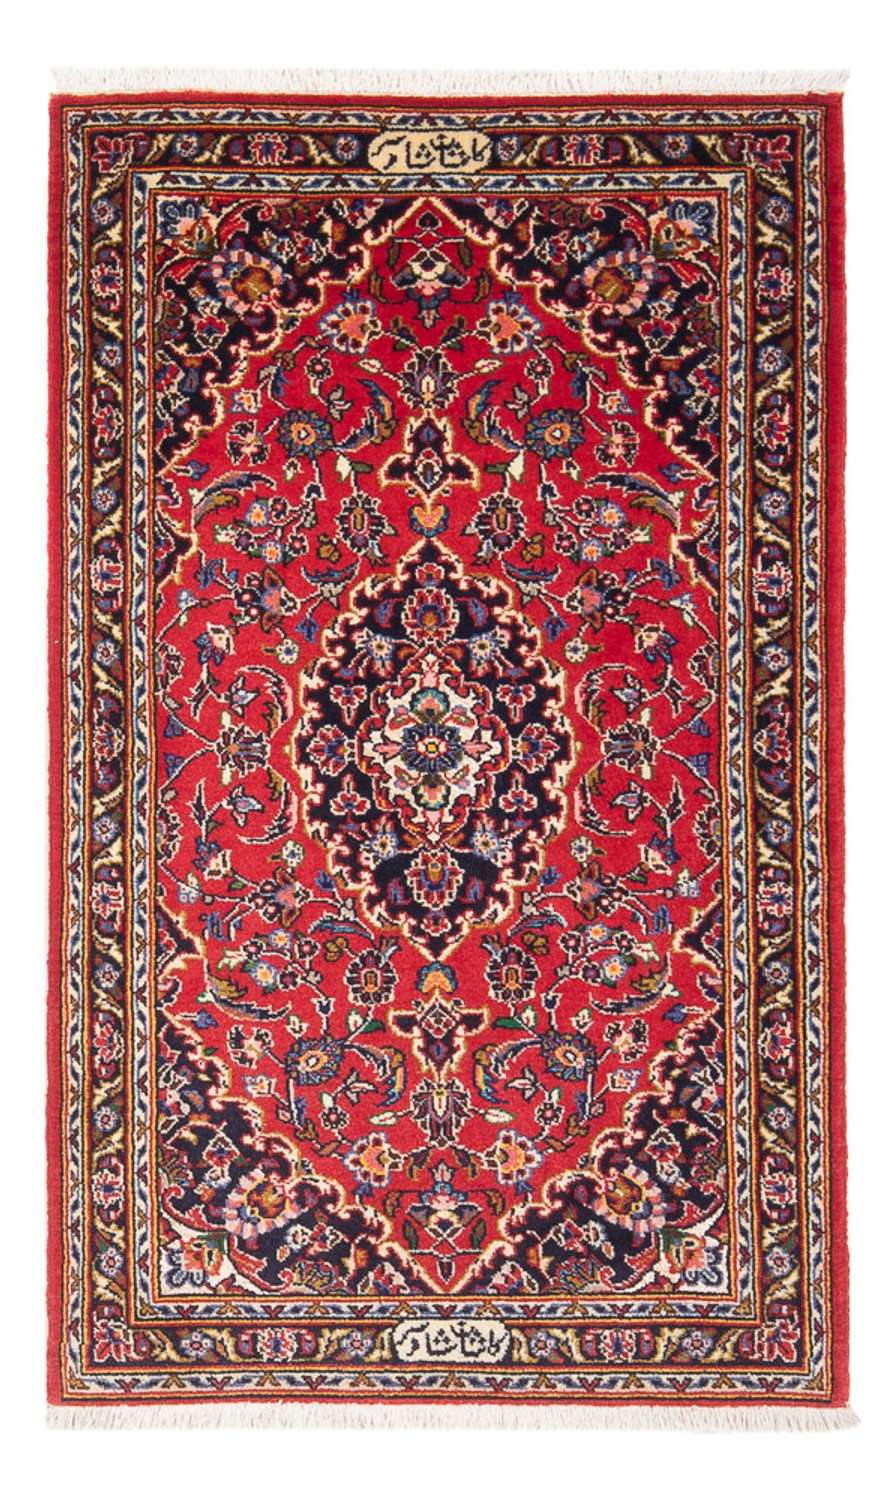 Tapete persa - Keshan - 127 x 67 cm - vermelho